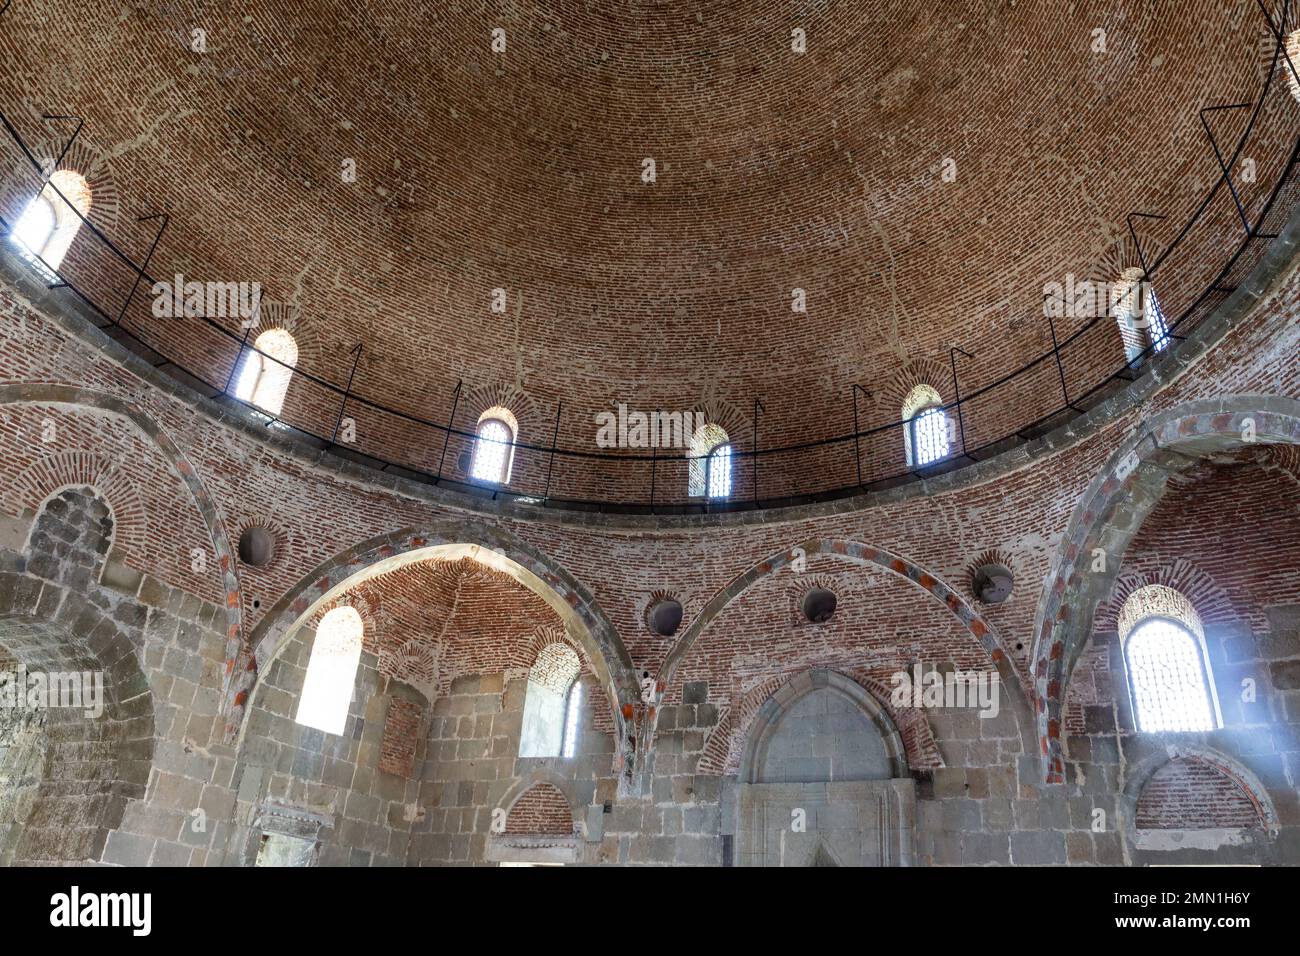 Moschea Akhmediye vista interna al Castello di Akhaltsikhe (Rabati) con pareti di pietra ruvida, vecchi affreschi sbiaditi e grande cupola, Georgia. Foto Stock